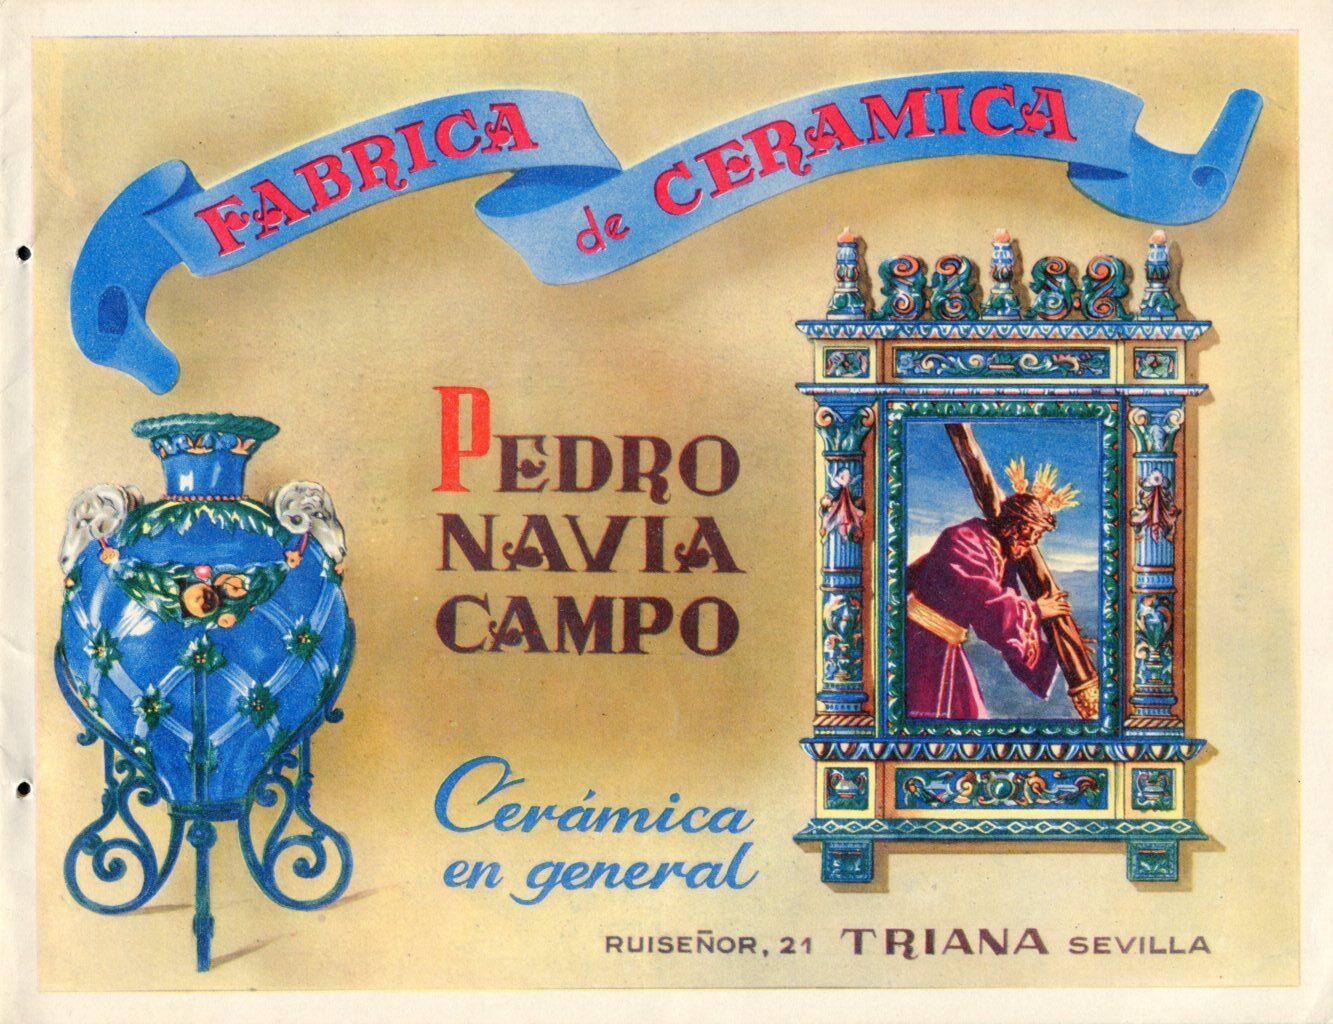 01886. Diseño. Catálogo. Fábrica de Cerámica Pedro Navia Campos. Sevilla.